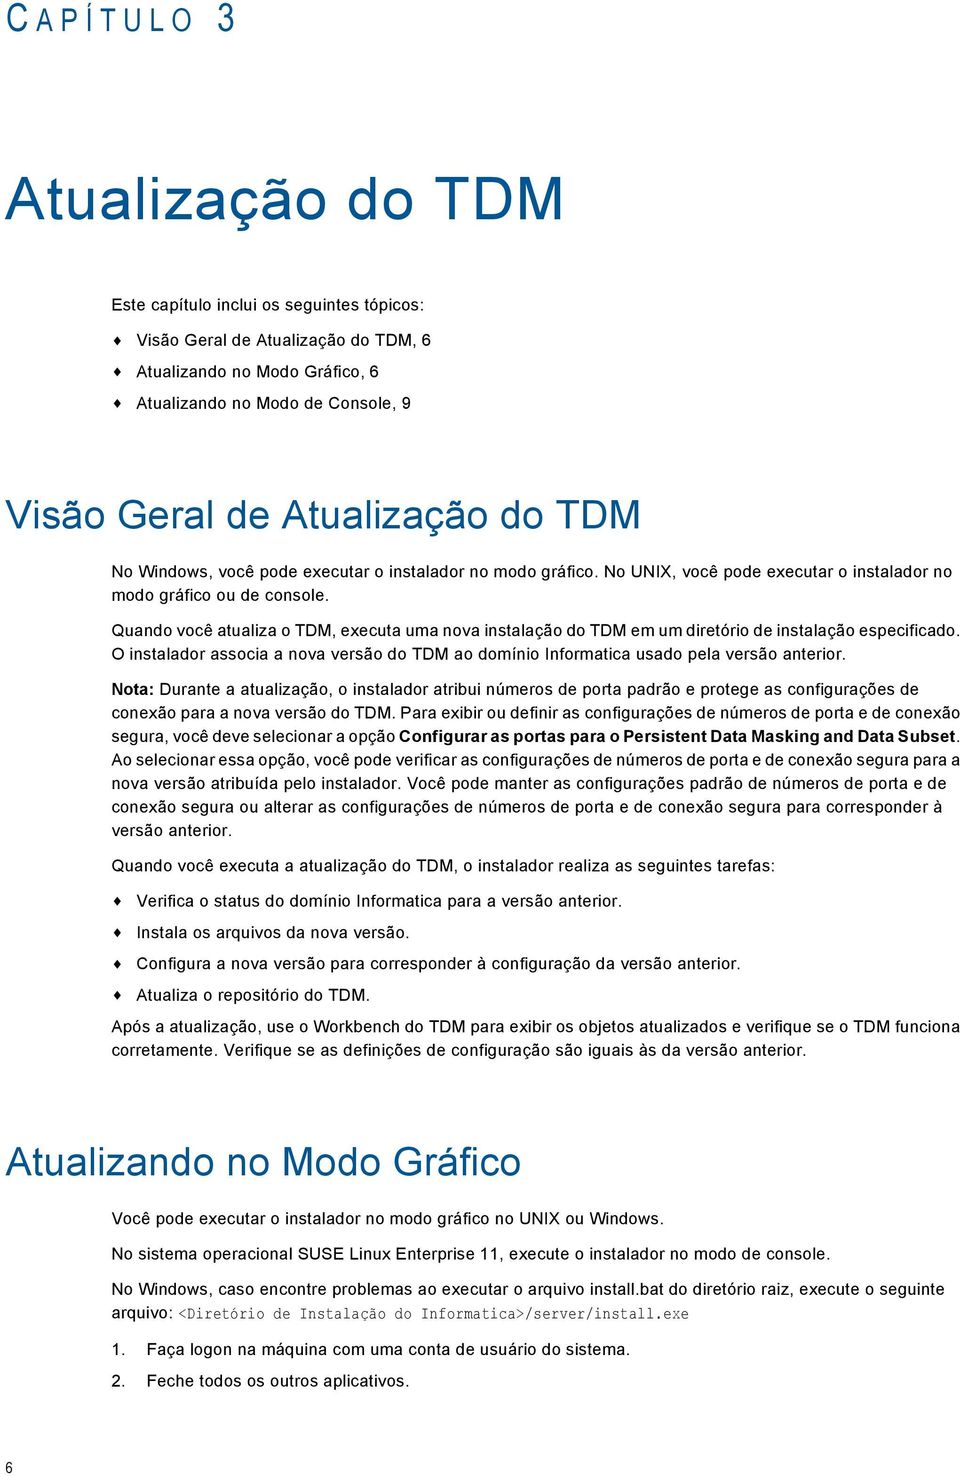 Quando você atualiza o TDM, executa uma nova instalação do TDM em um diretório de instalação especificado. O instalador associa a nova versão do TDM ao domínio Informatica usado pela versão anterior.